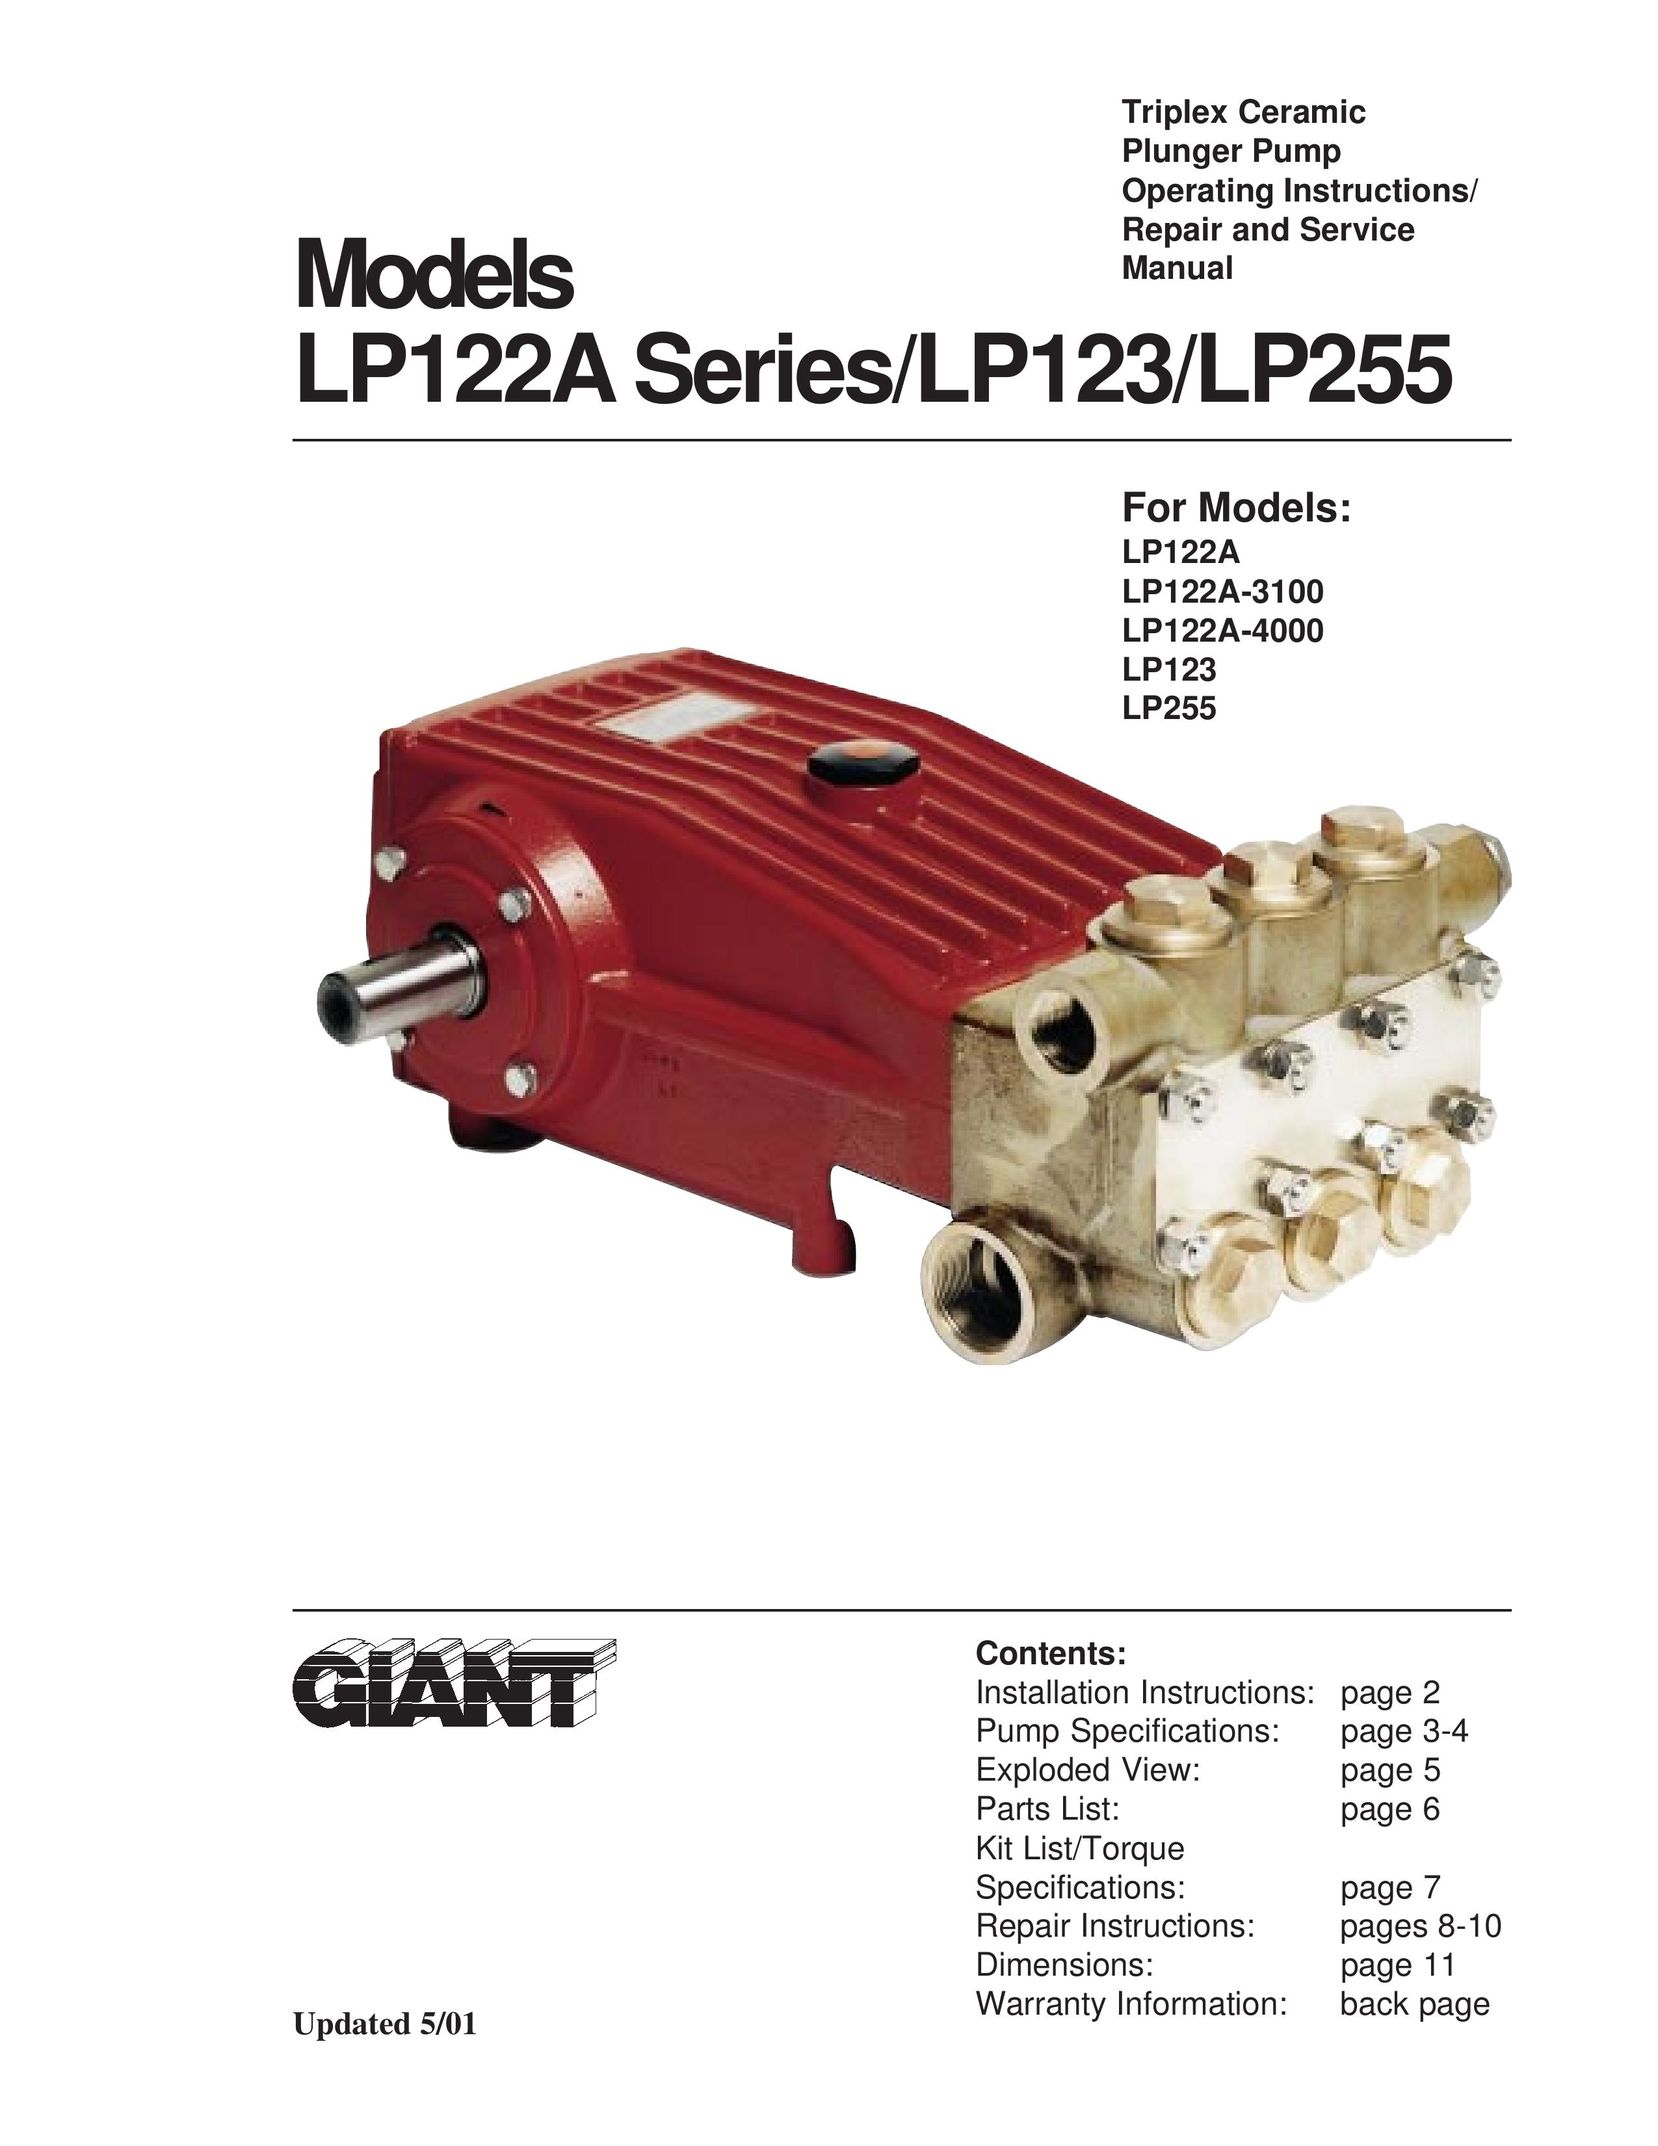 Giant LP255 Series Water Pump User Manual